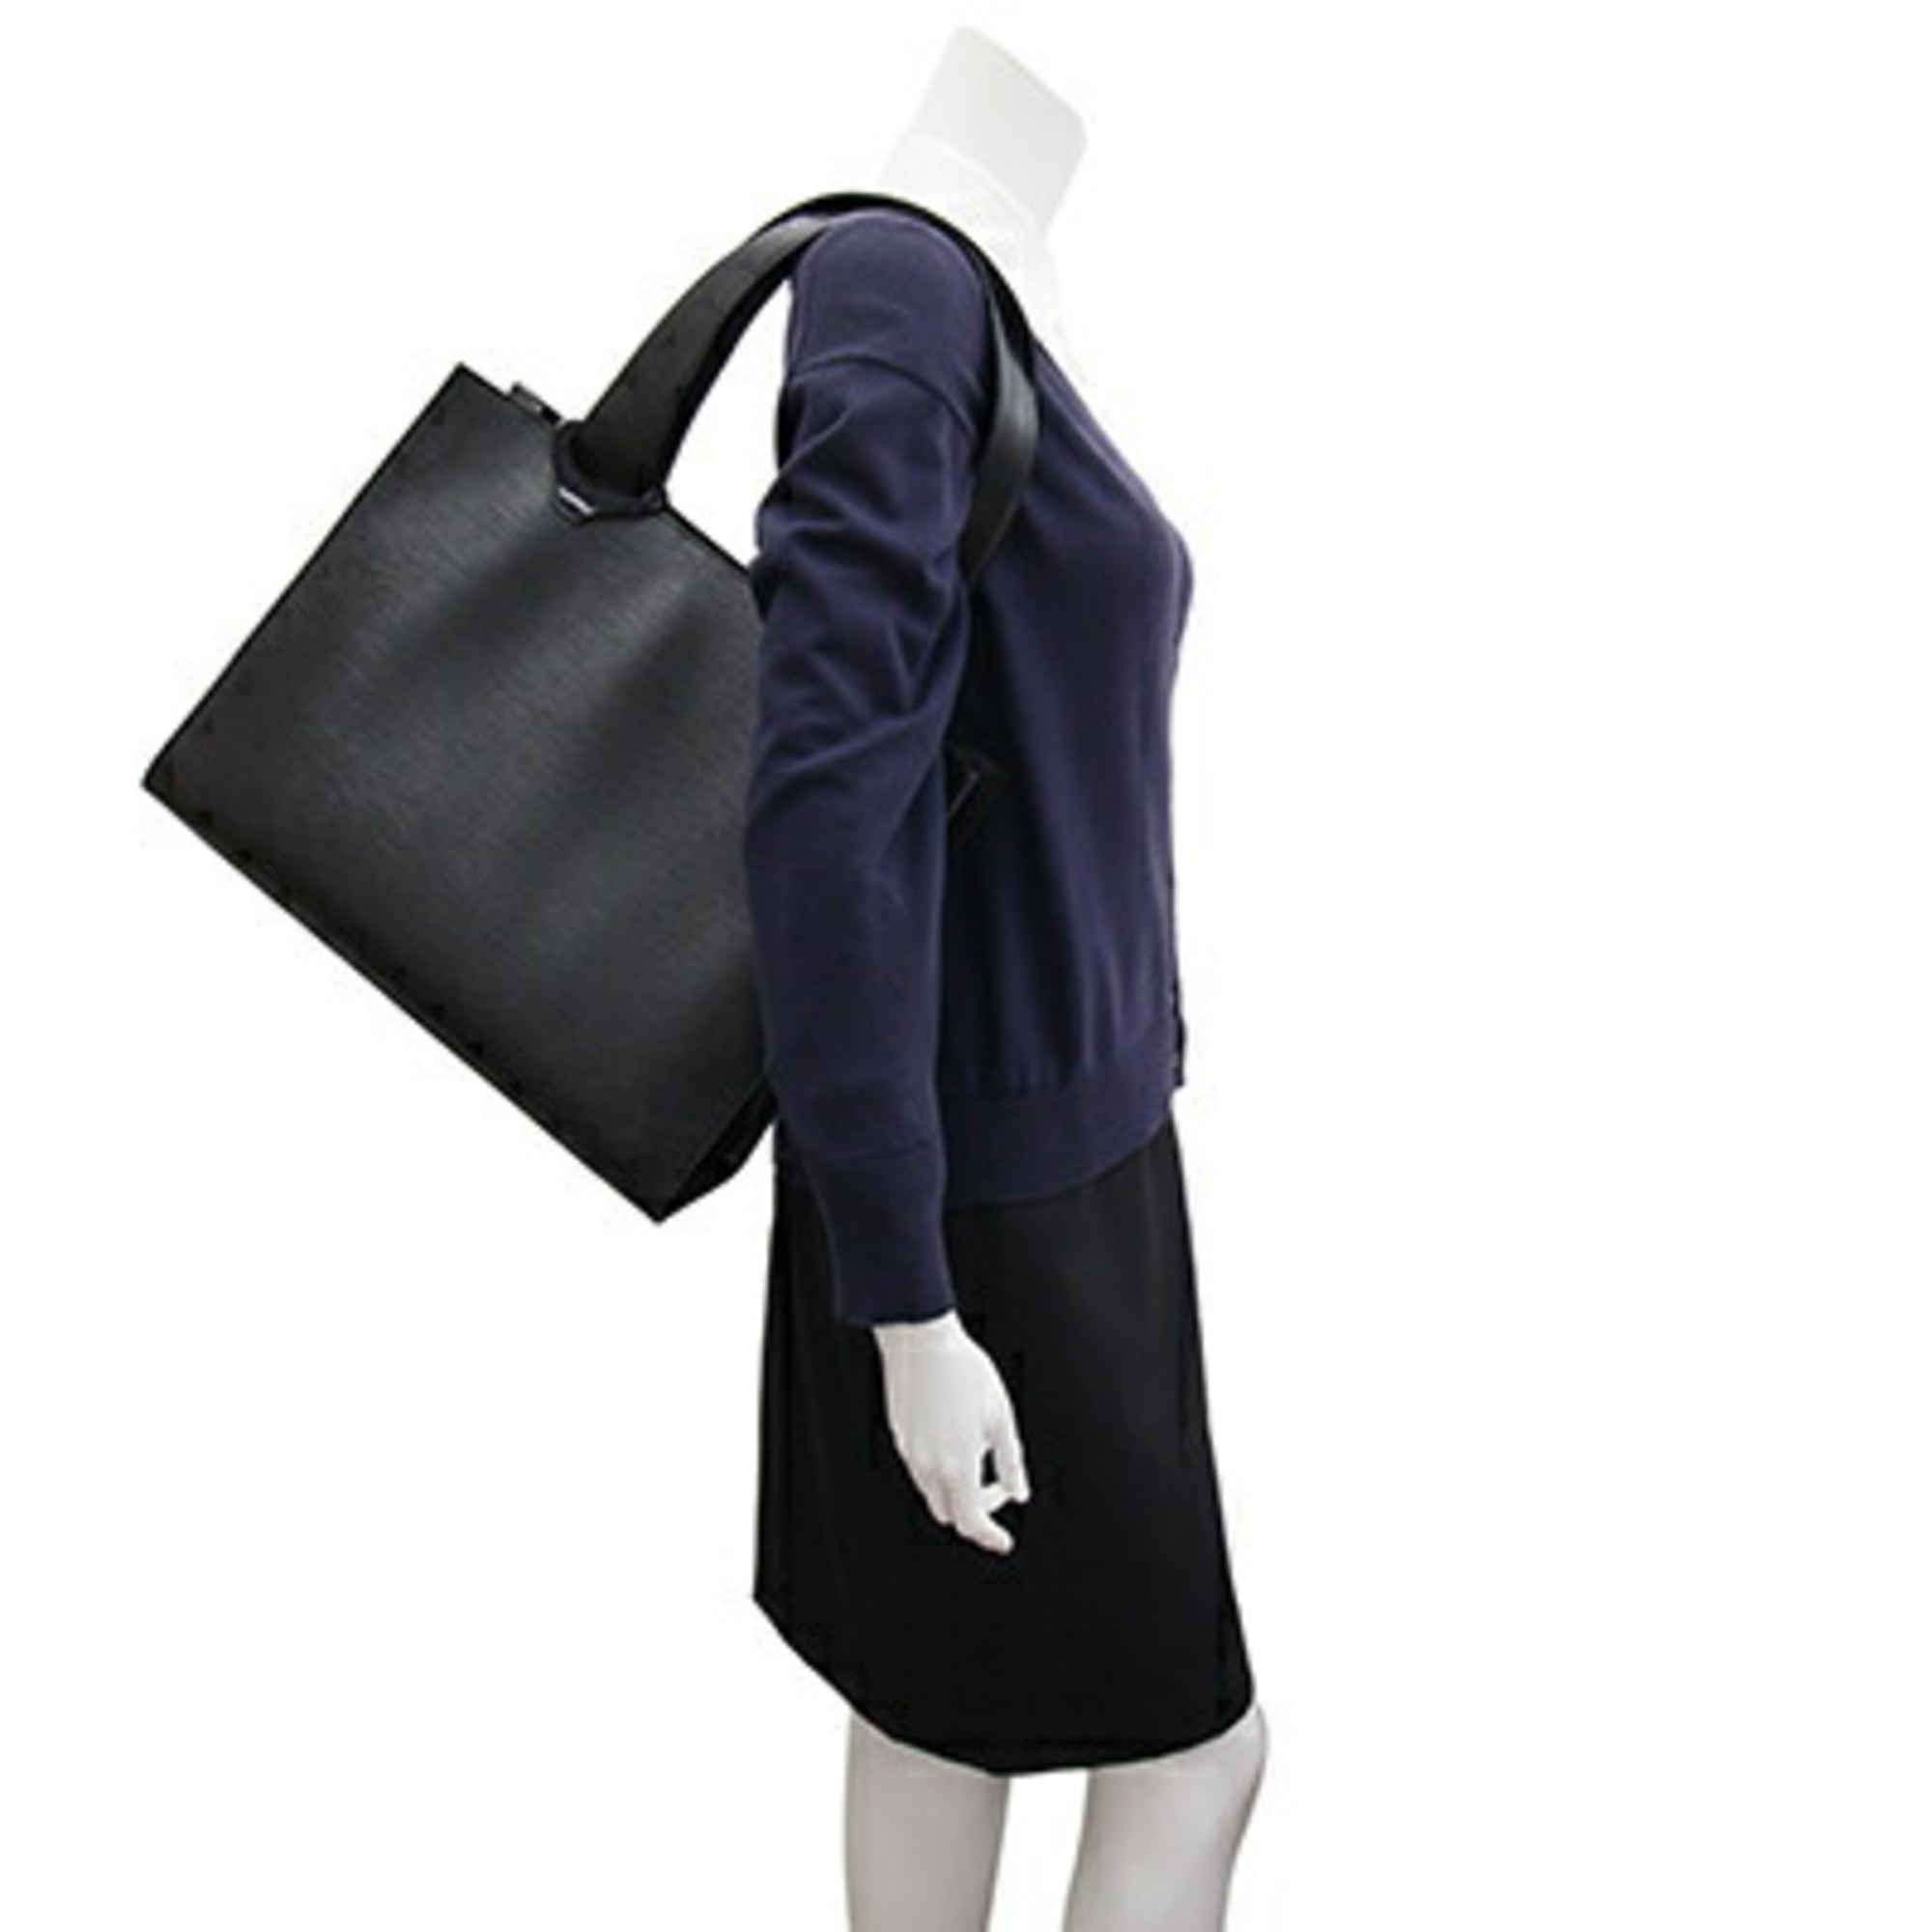 Louis Vuitton Tote Bag Epi Gemo M52452 Noir Shoulder Black Women's LOUIS VUITTON